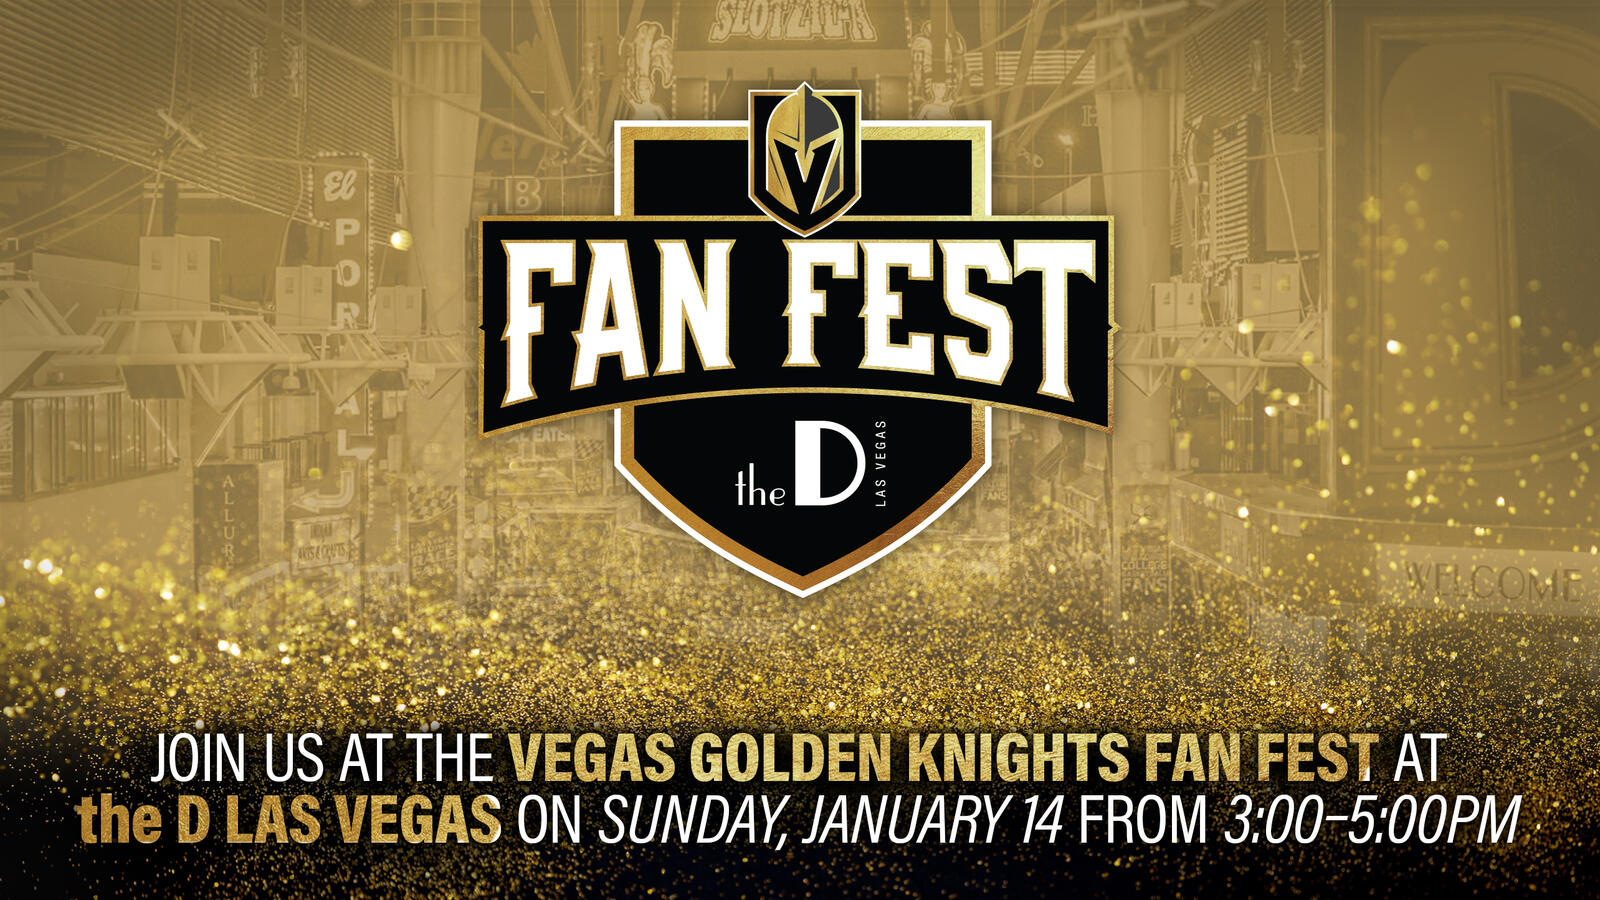 Nhl Vegas Golden Knights Fan Fest - D Las Vegas , HD Wallpaper & Backgrounds